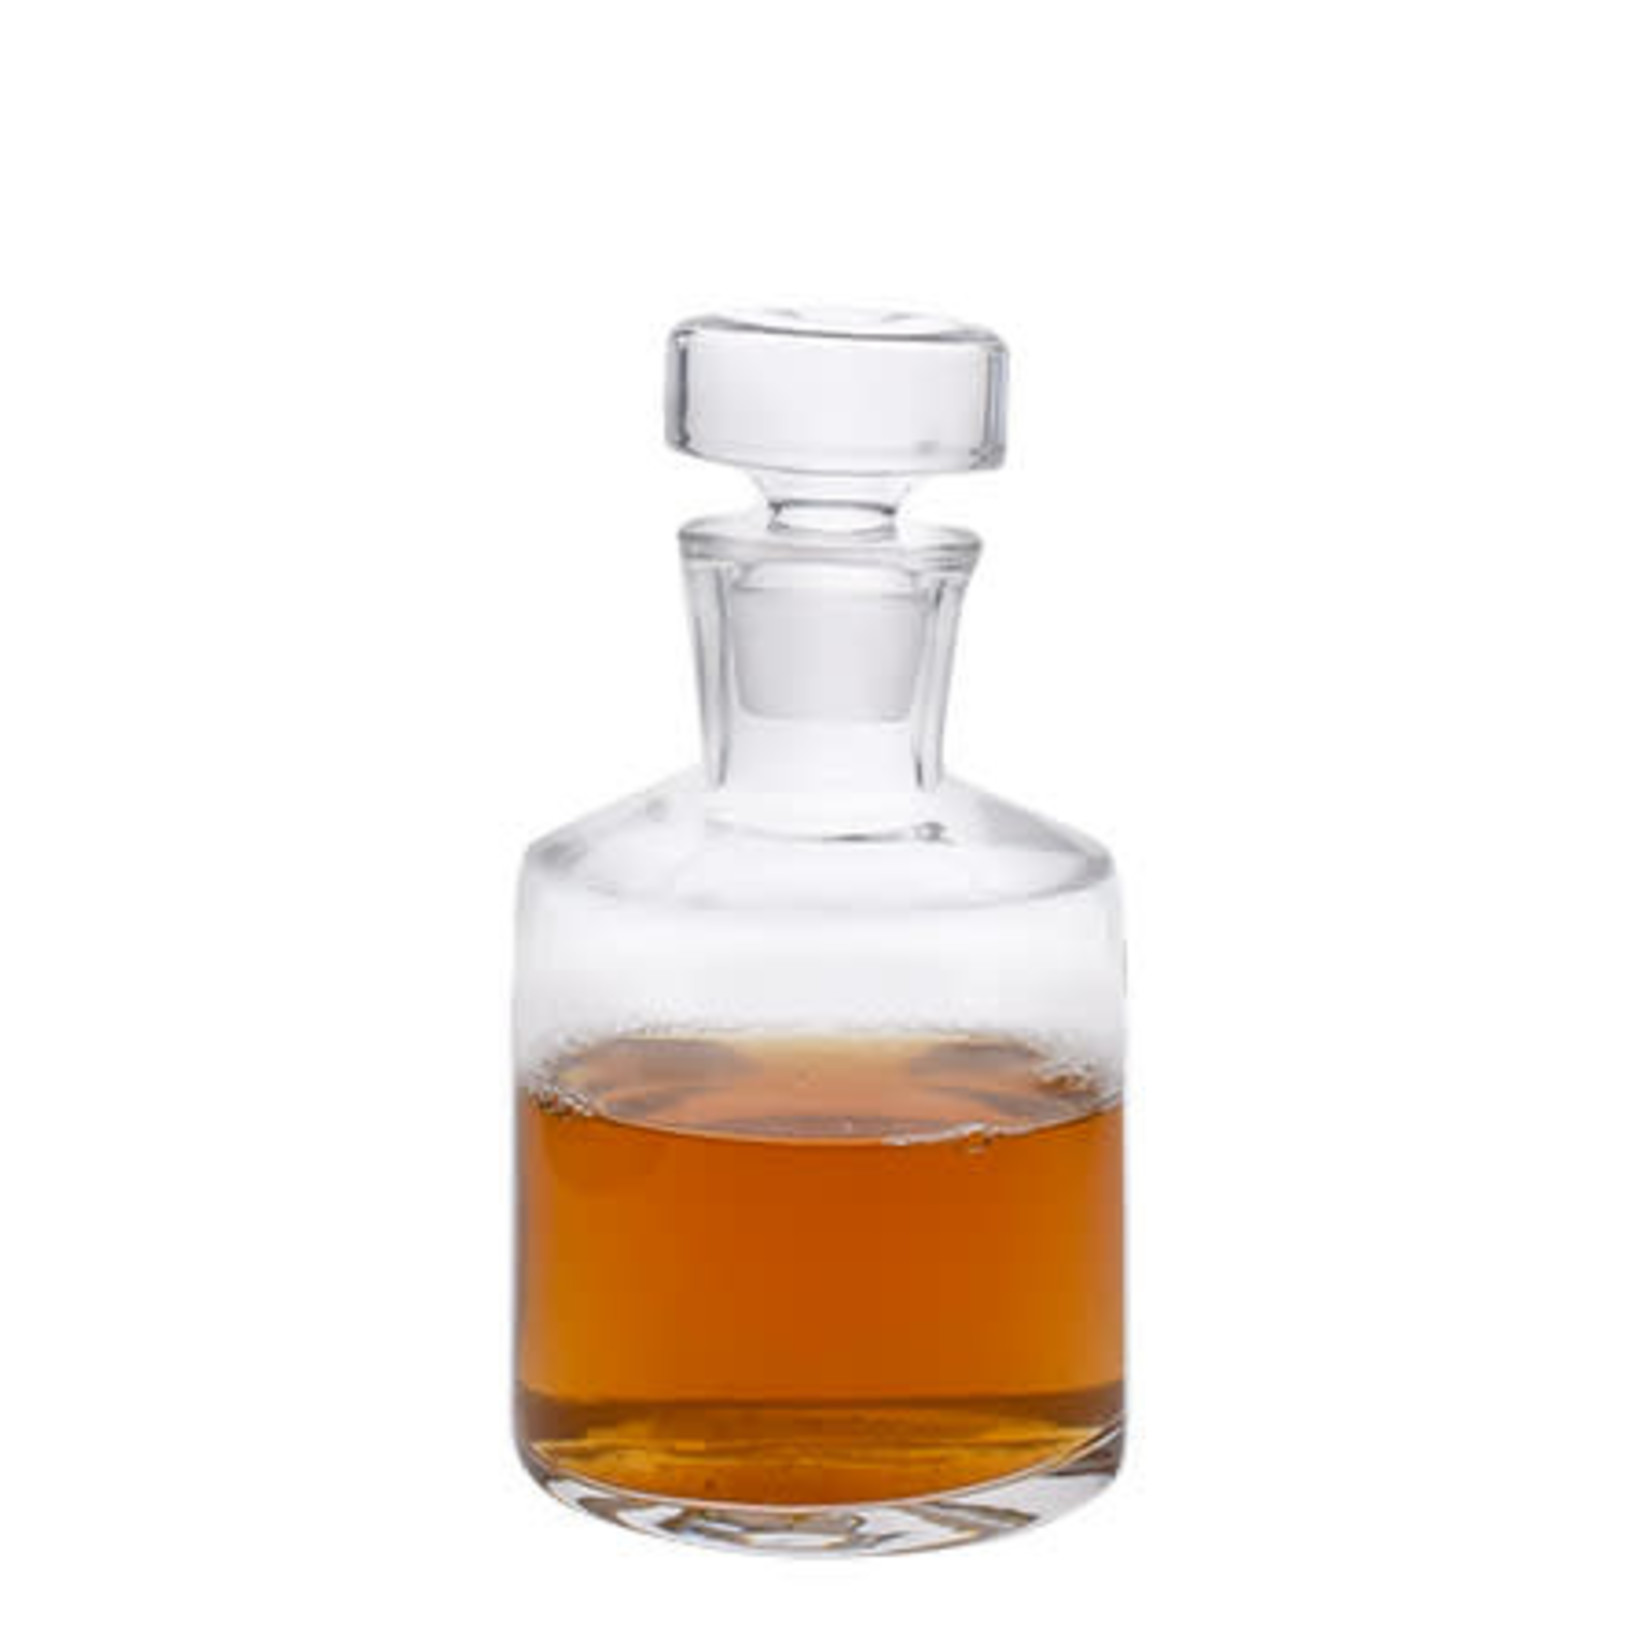 Decanter - Vino Life Malt Whisky Decanter